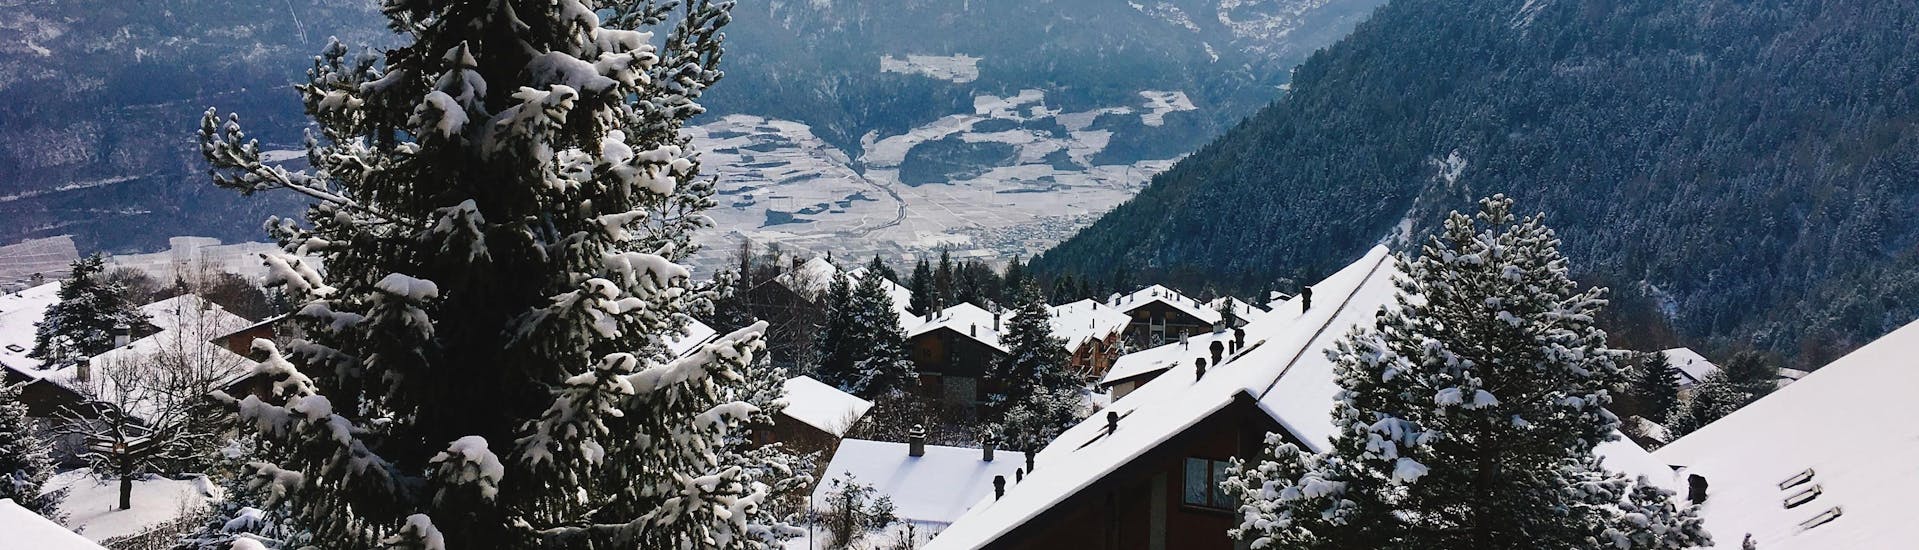 Une vue sur les toits enneigés du village suisse d'Ovronnaz, une station de ski populaire où les visiteurs peuvent réserver un cours de ski dans l'une des écoles de ski locales.